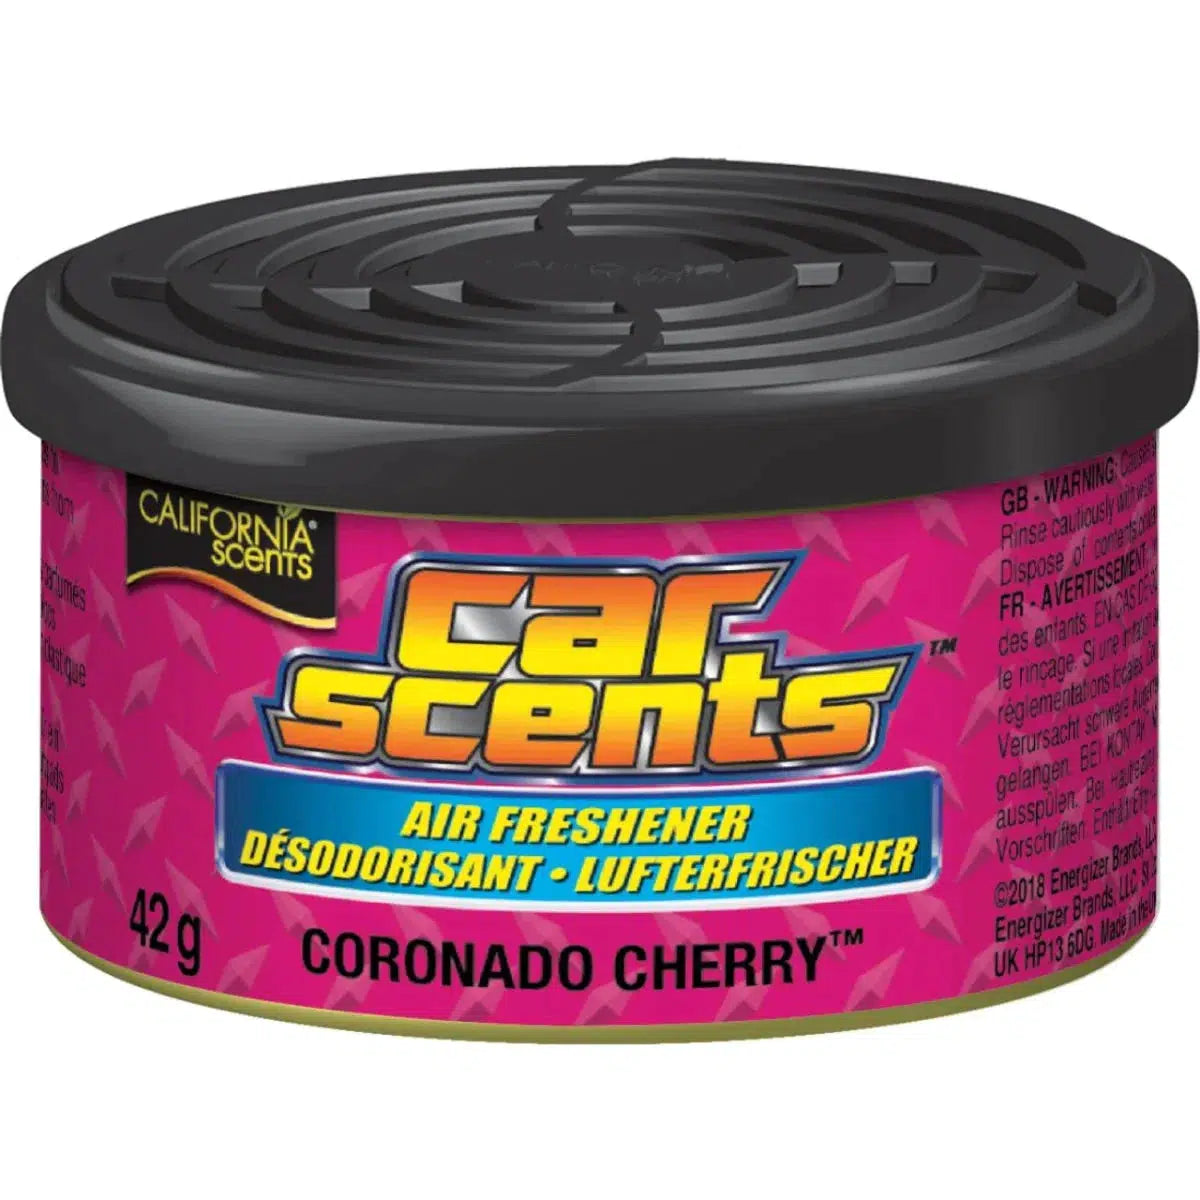 California Scents-Coronado Cherry-Car Scent-Masori.de